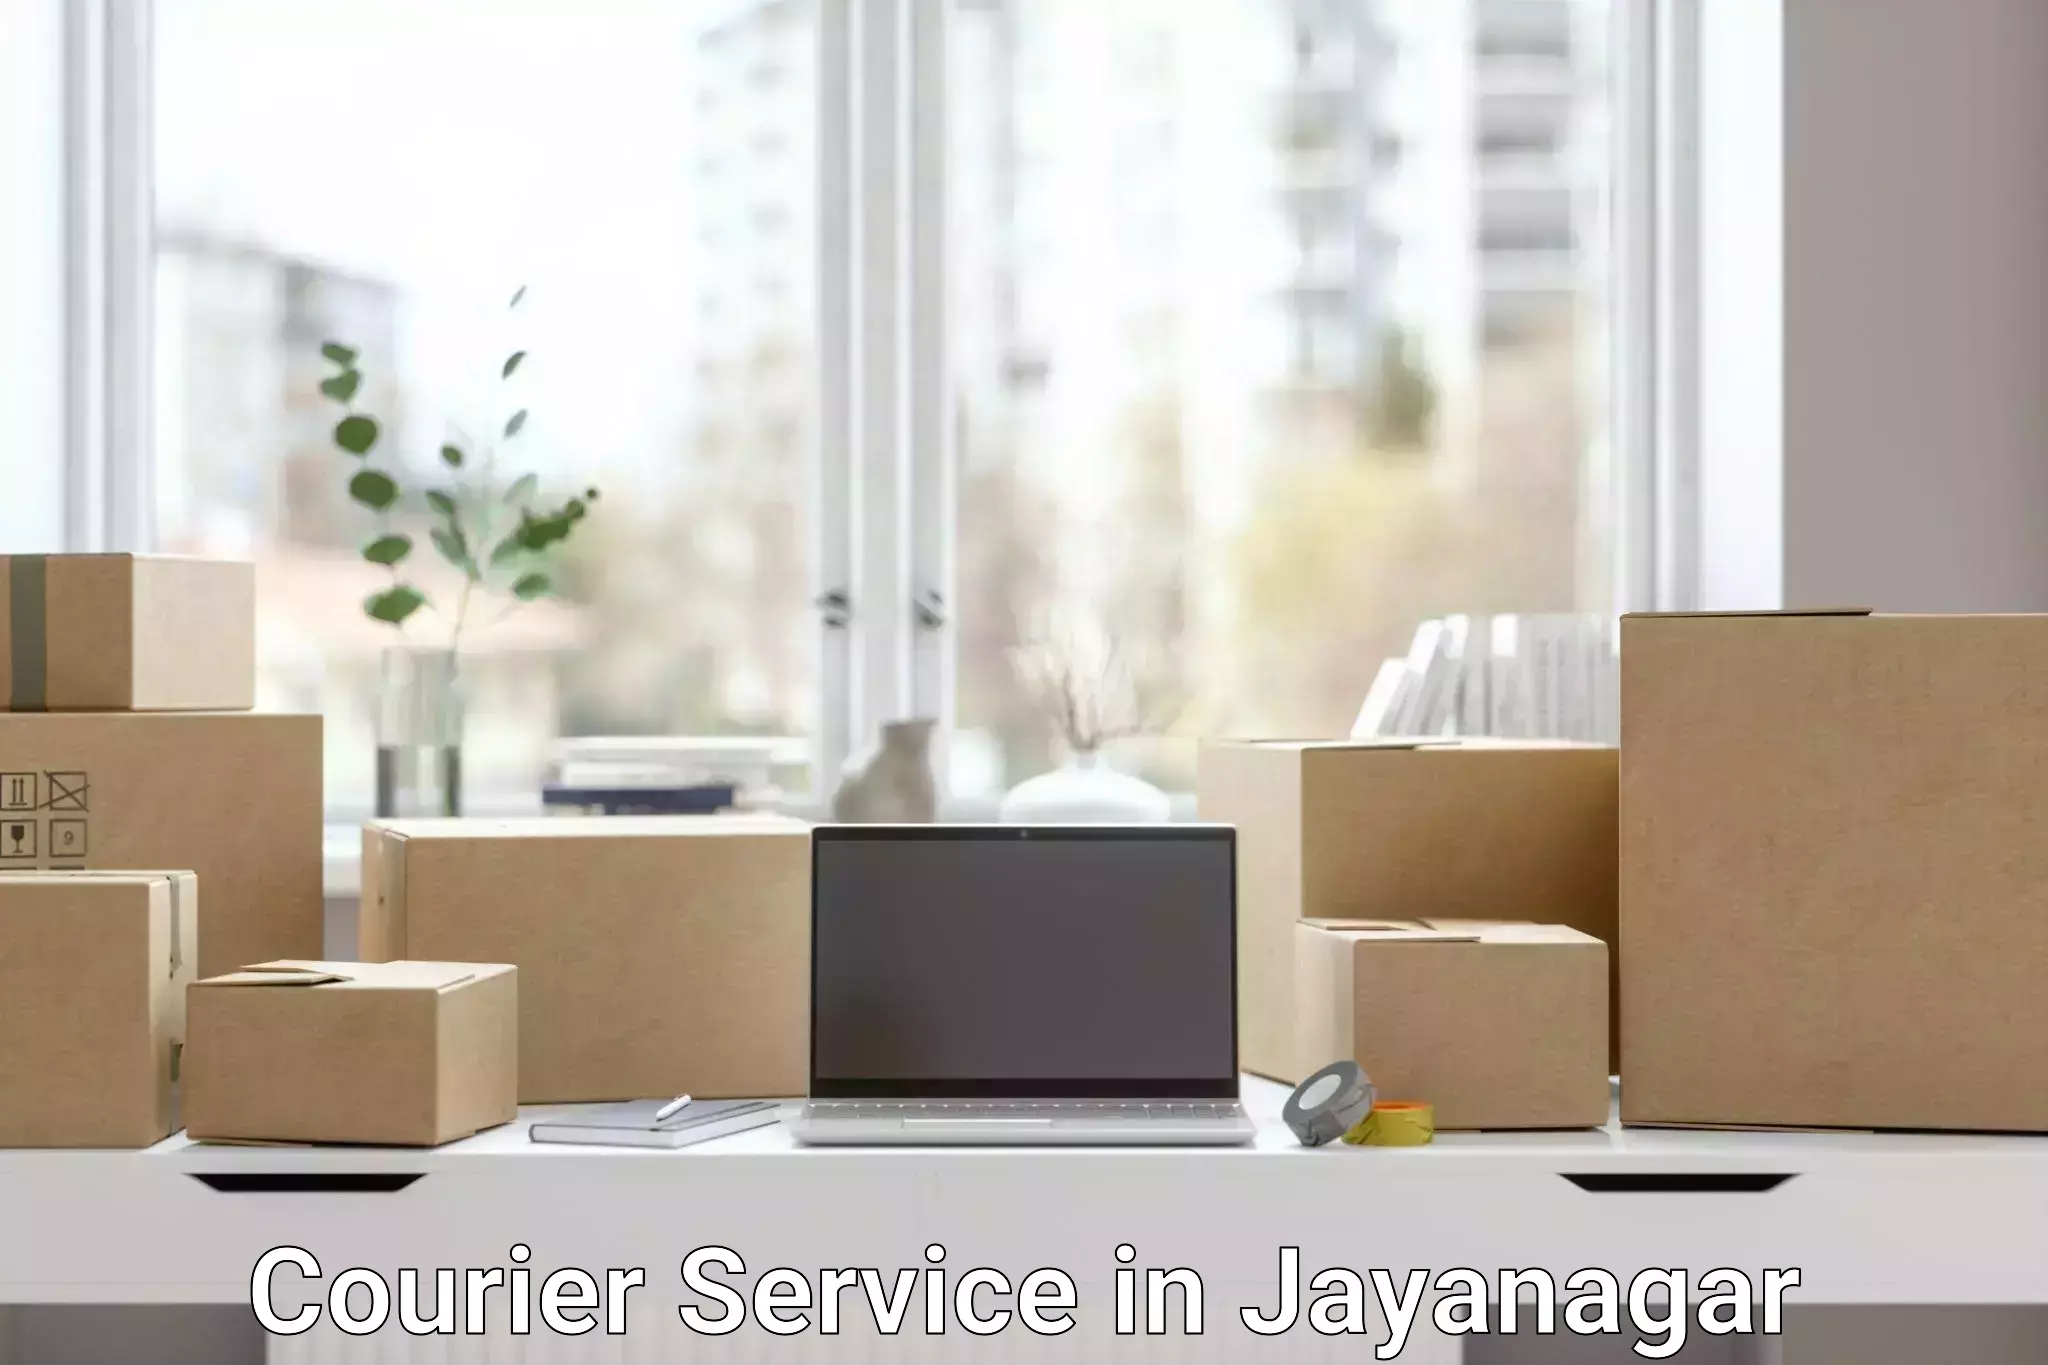 Urgent courier needs in Jayanagar